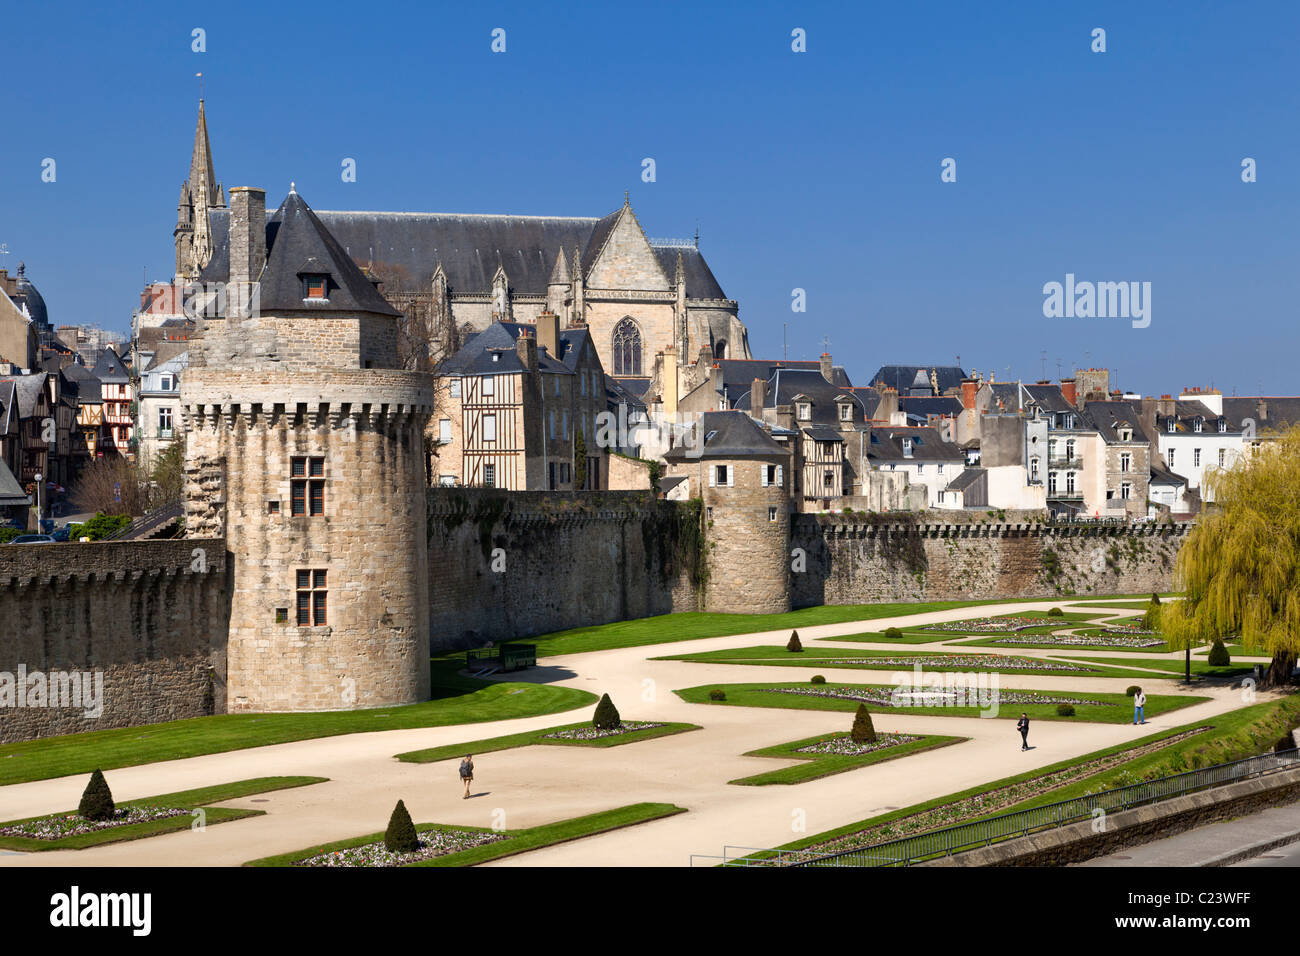 Les murs de la ville, jardins, parc urbain de la tour du Connétable et cathédrale de Vannes, Morbihan, Bretagne, France Banque D'Images